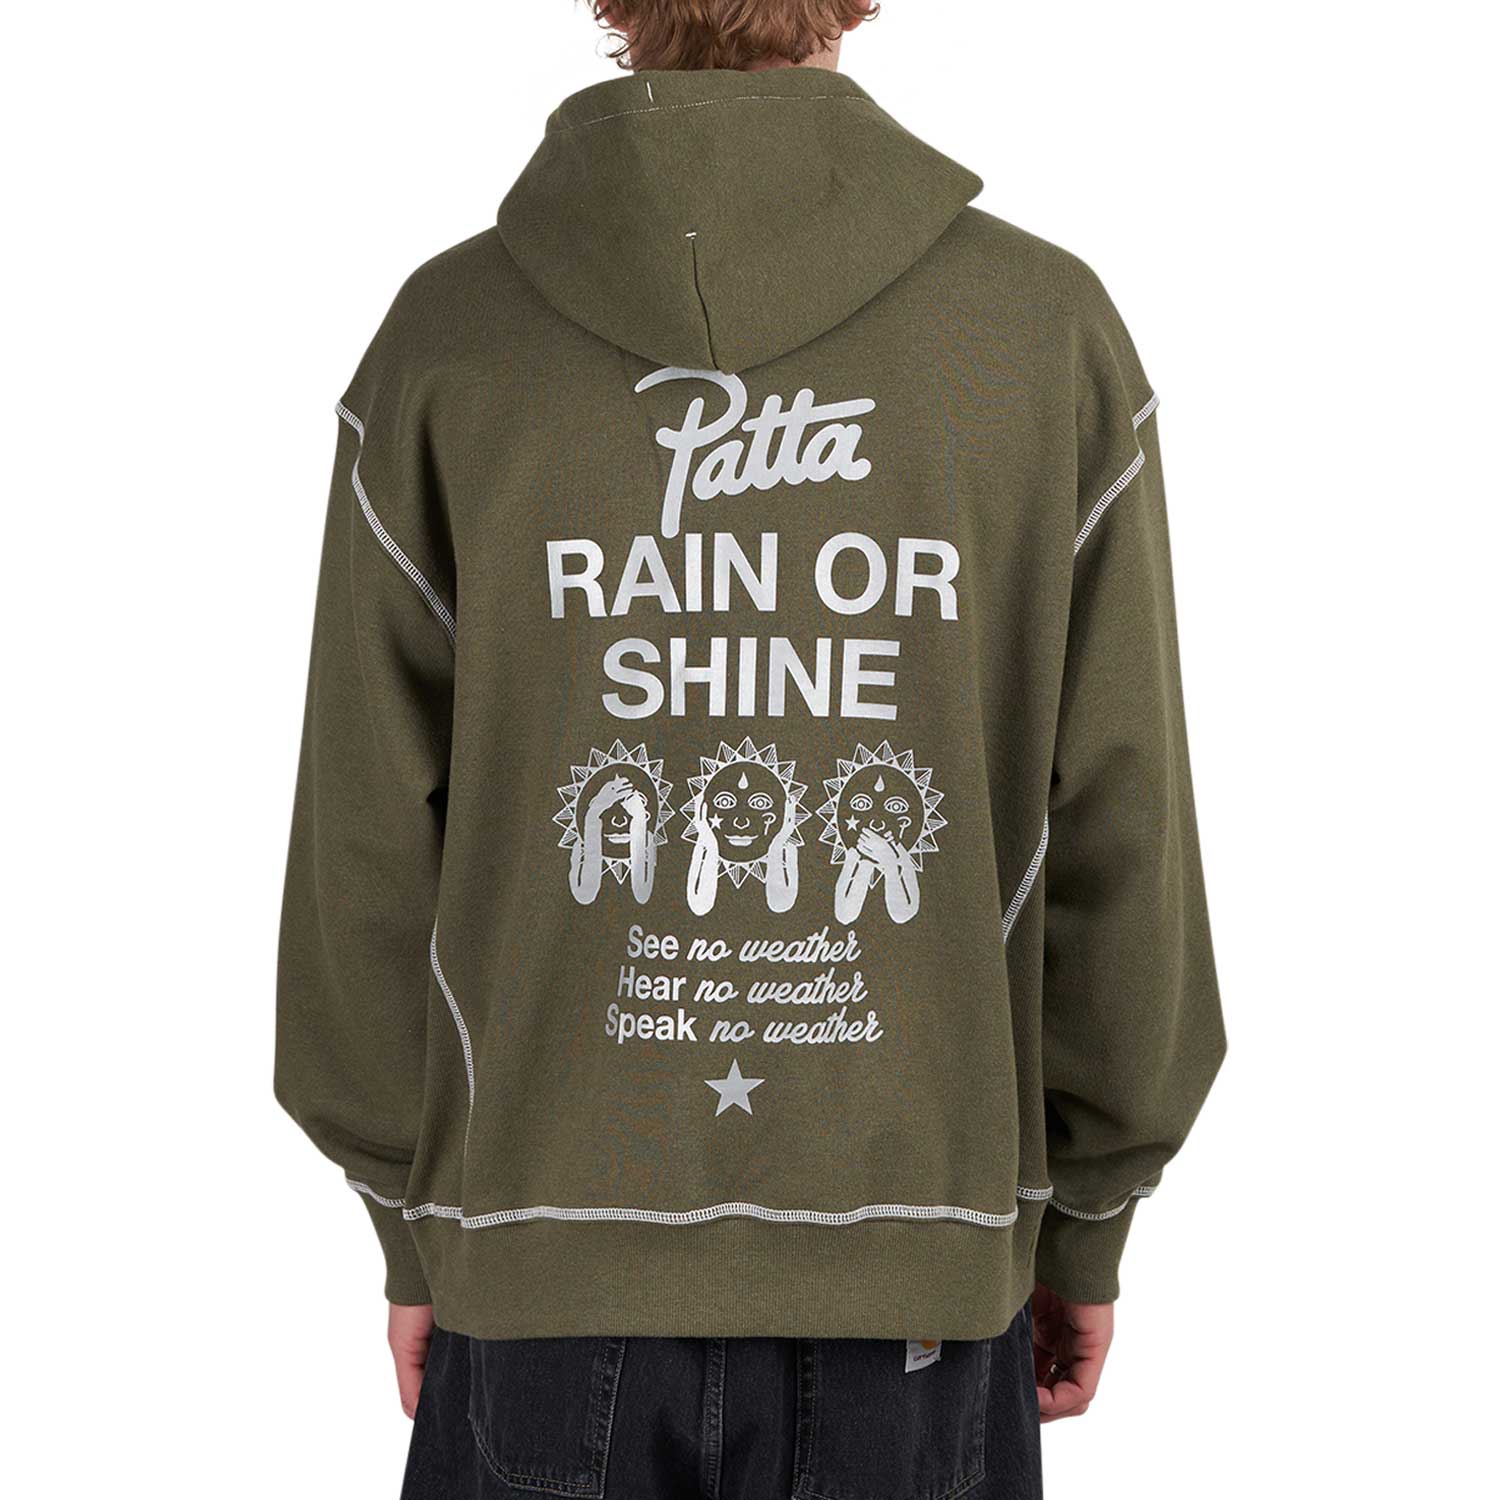 Converse x Patta Rain or Shine Hoodie (Grün)  - Allike Store